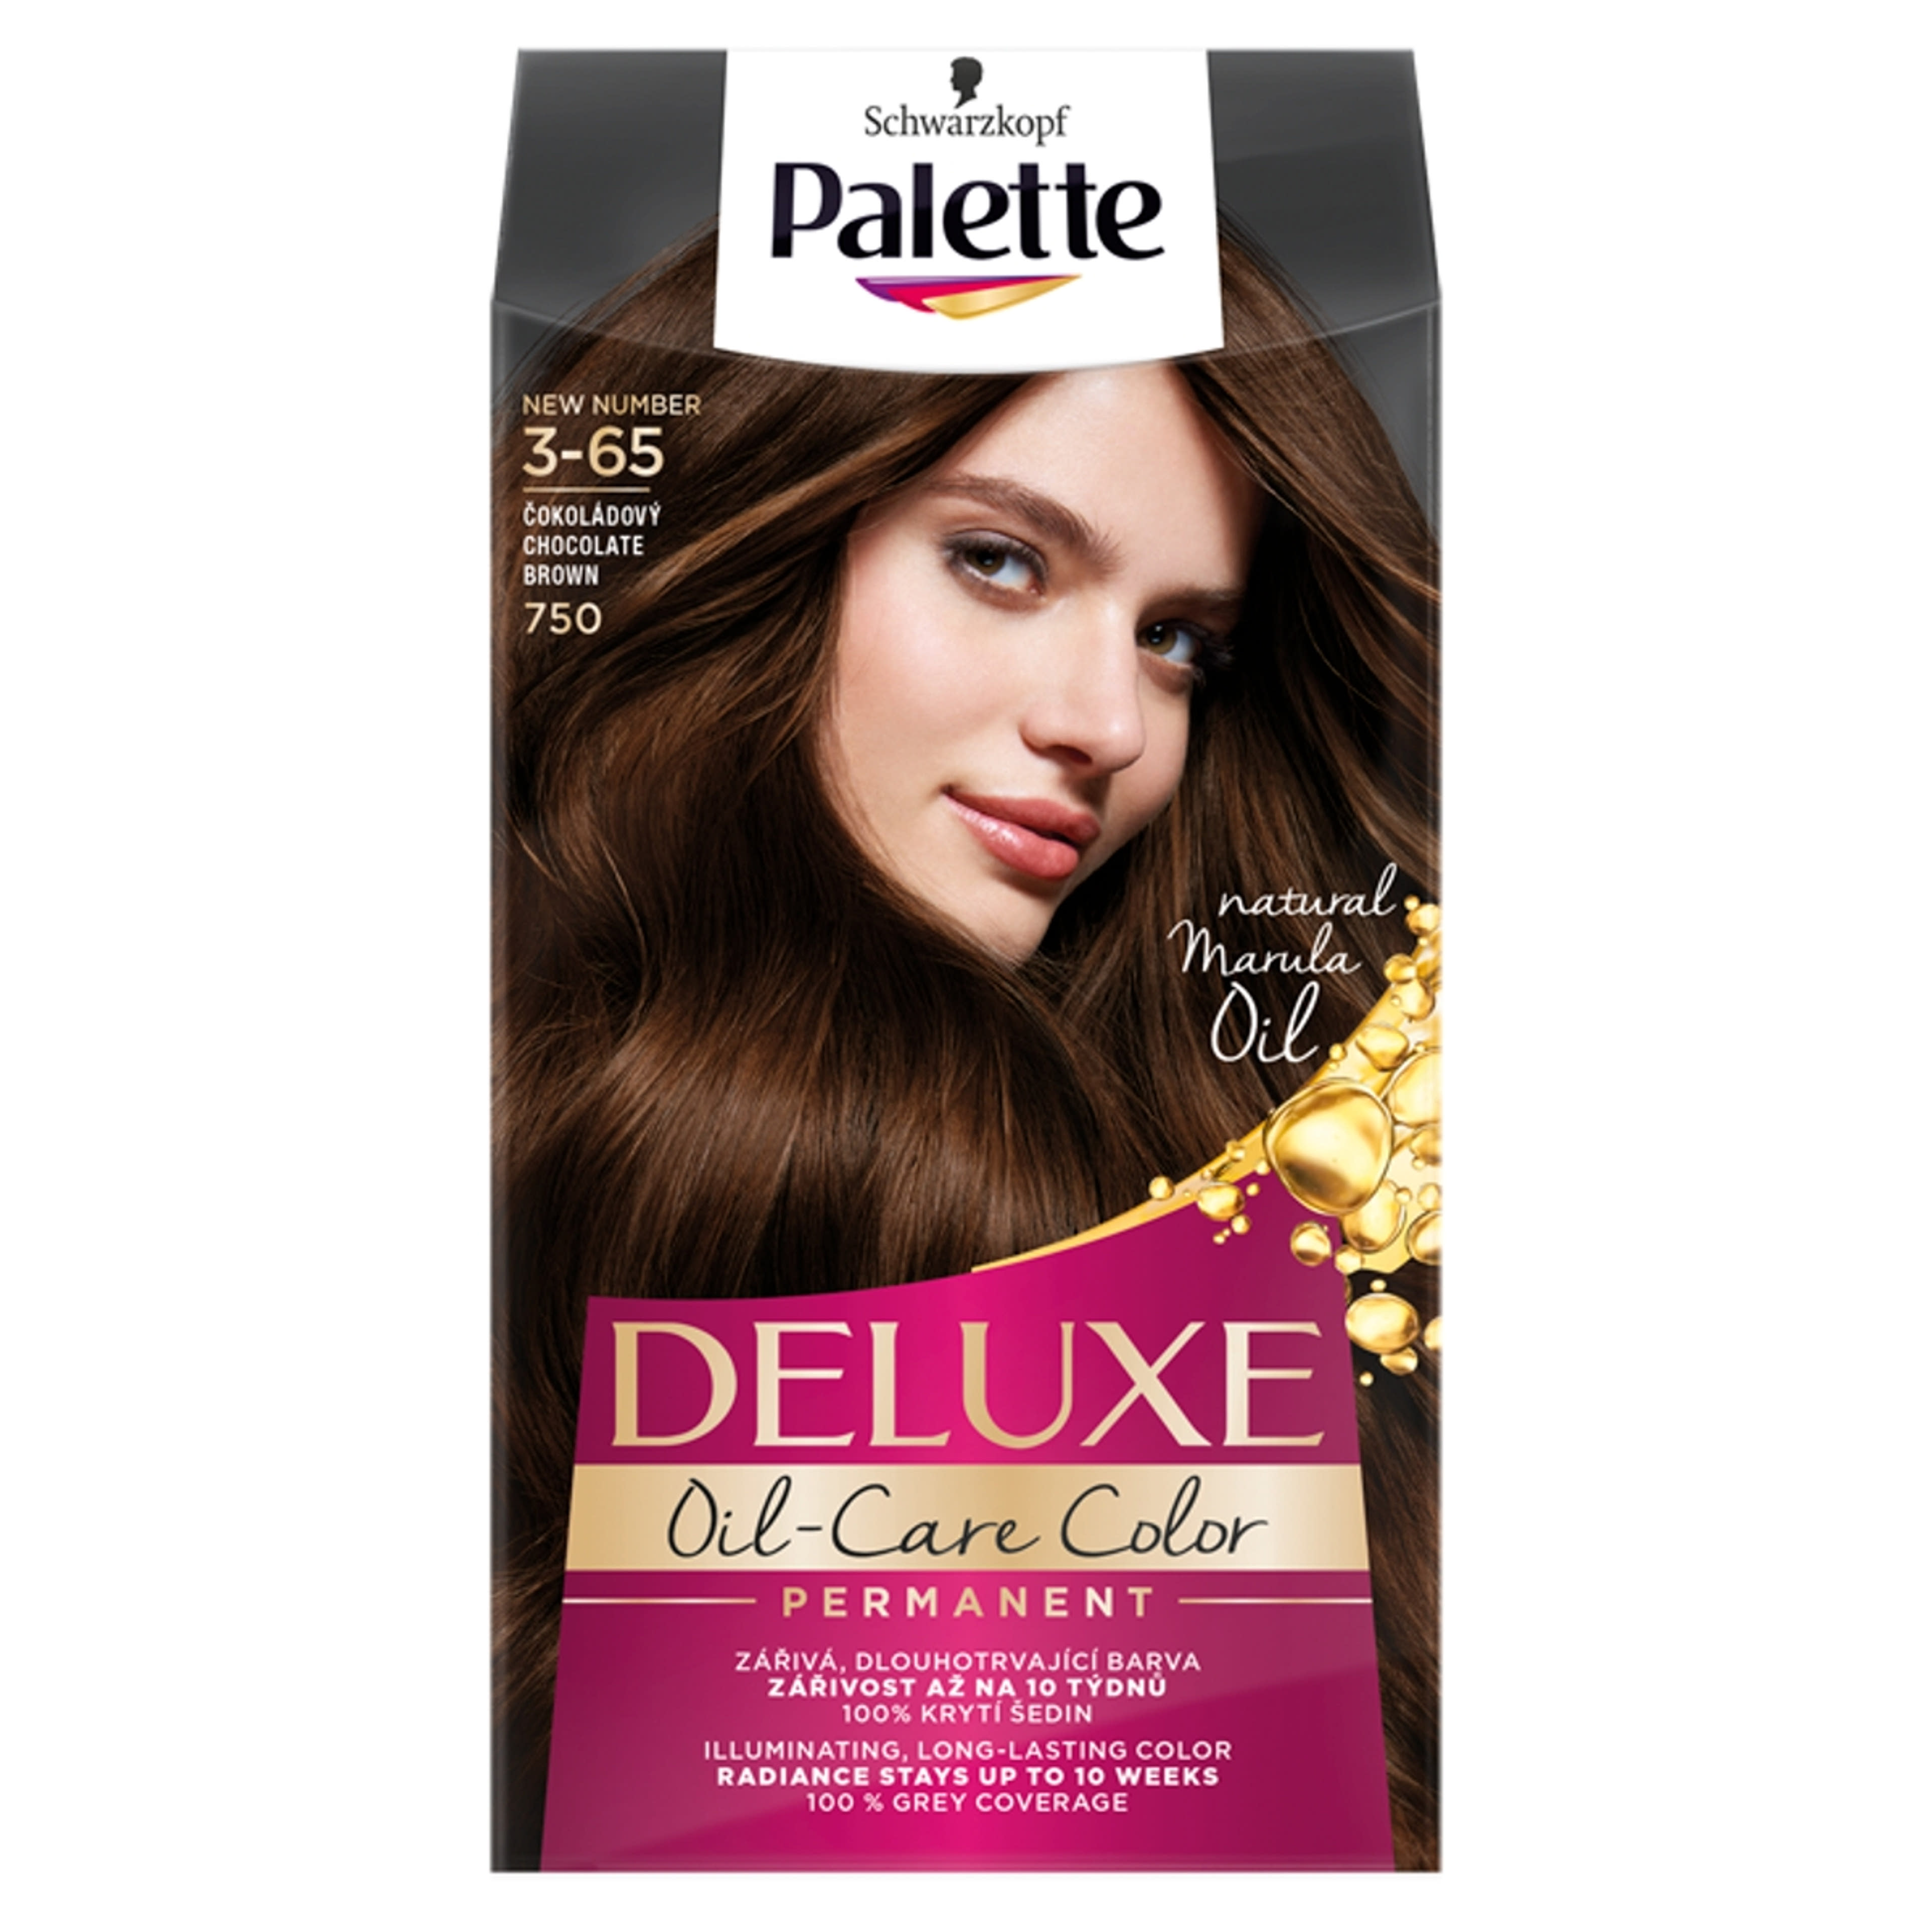 Palette Deluxe 3-65 csokoládé intenzív krémhajfesték (750) - 1 db